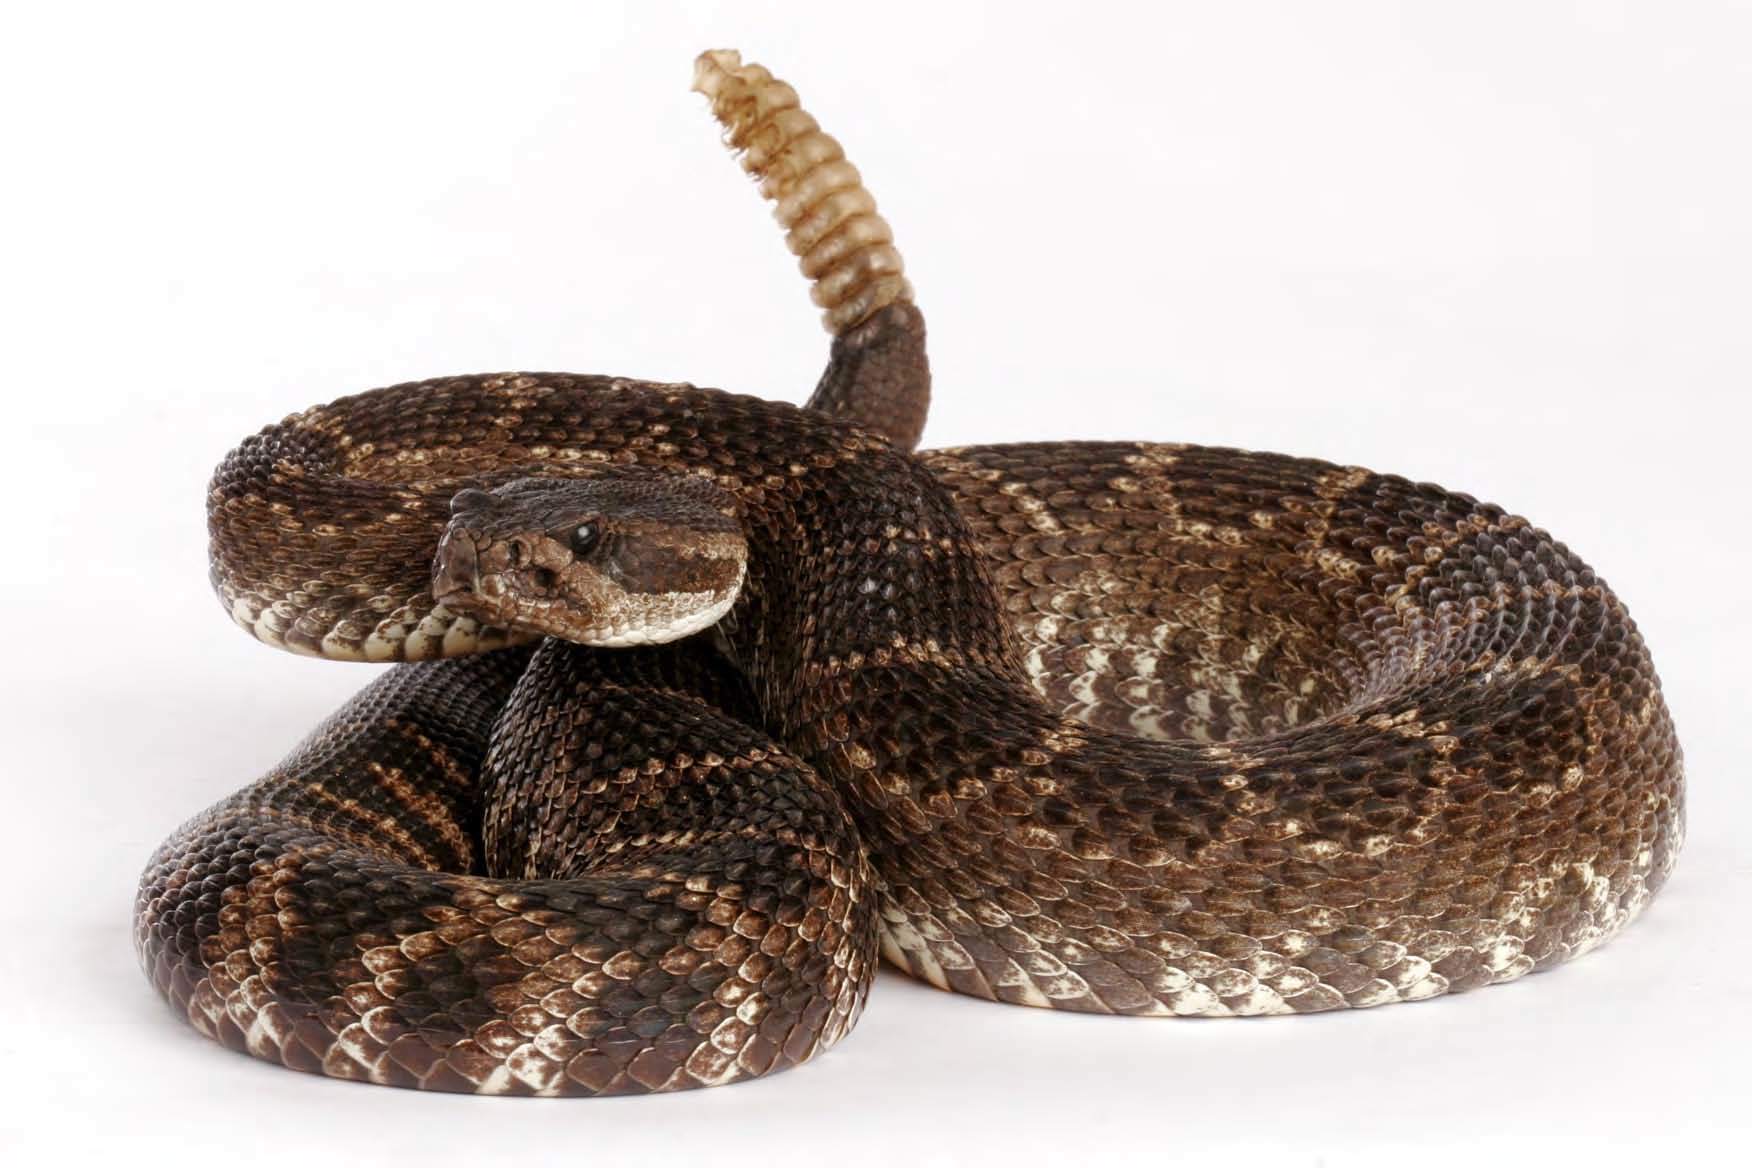 Snake Reptile Snakes Predator Rattlesnake Wallpaper For Desktop